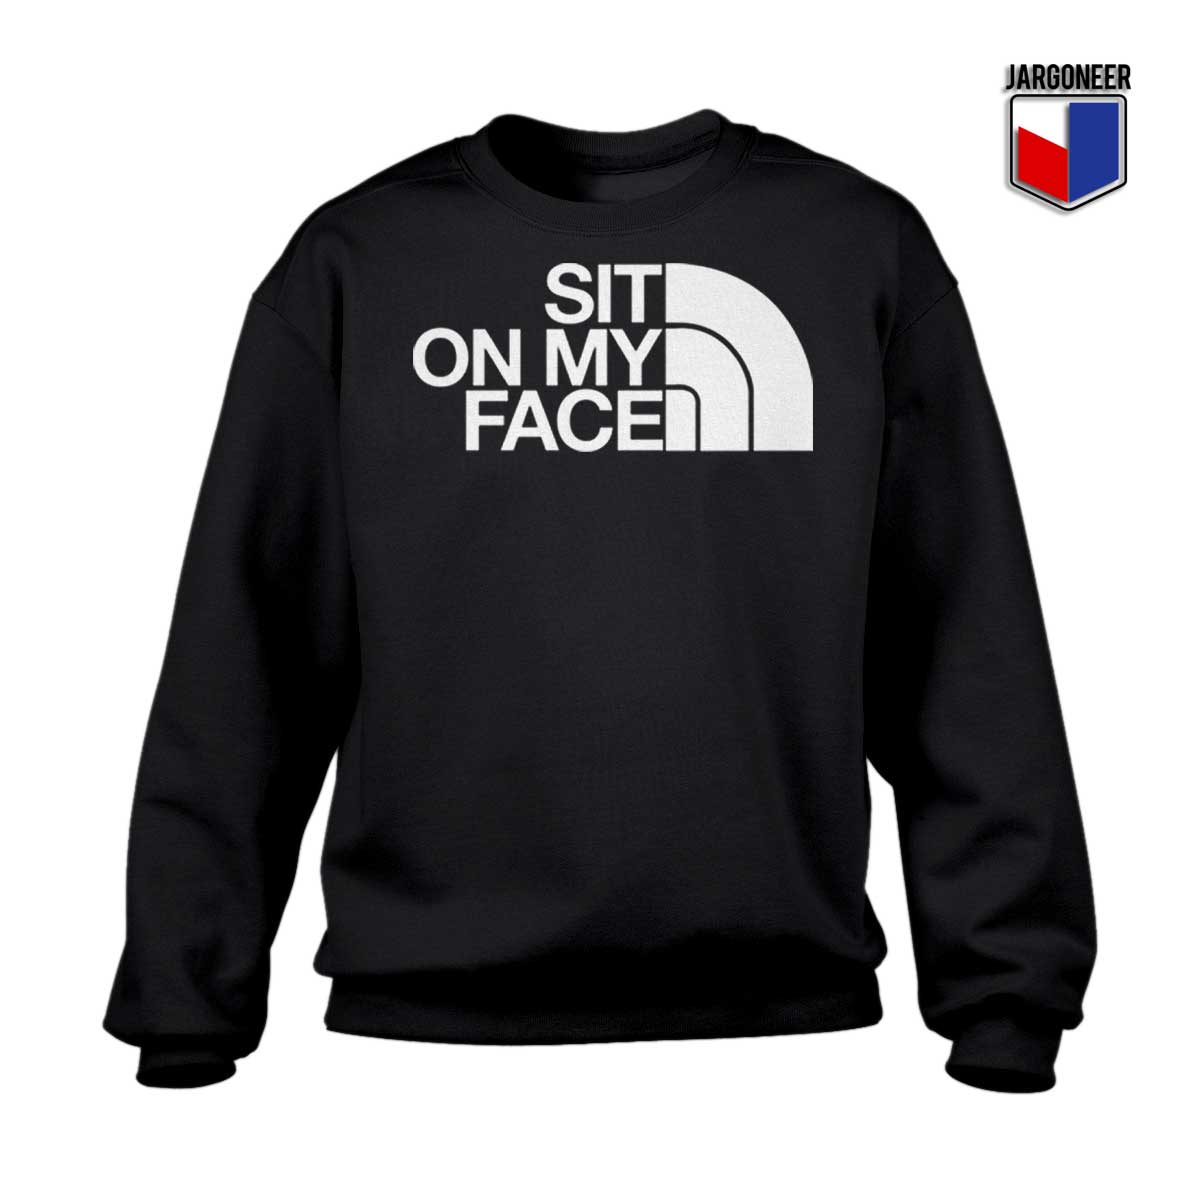 Sit On My Face Sweatshirt - Shop Unique Graphic Cool Shirt Designs